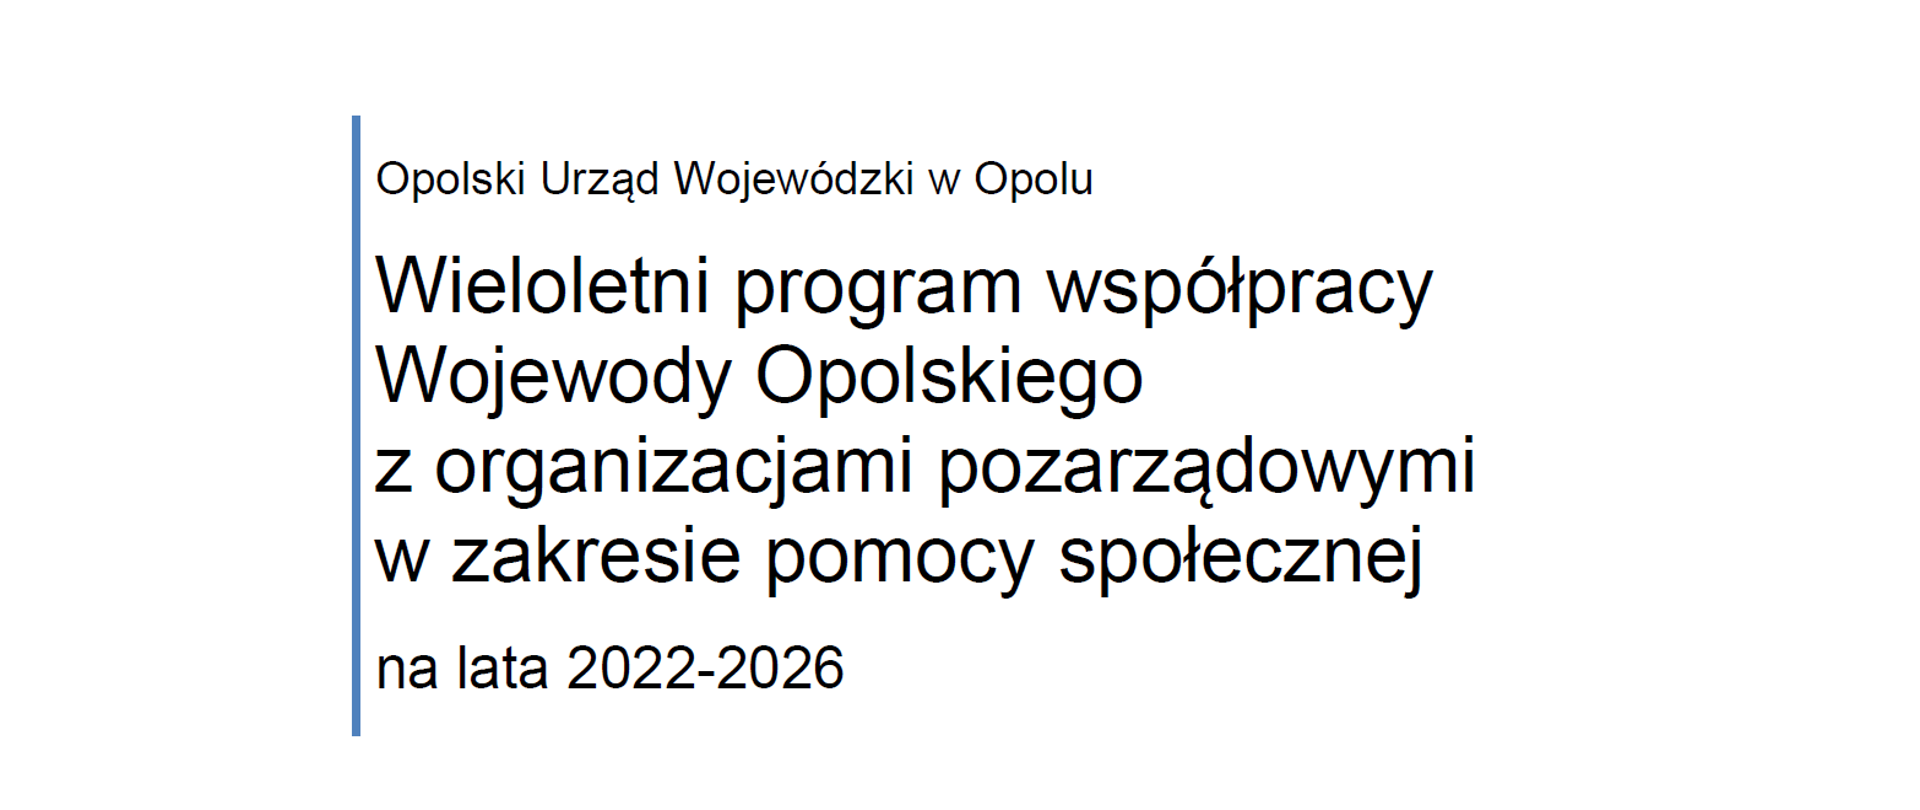 Wieloletni program współpracy Wojewody Opolskiego z NGOsami w zakresie pomocy społecznej 2022-2026